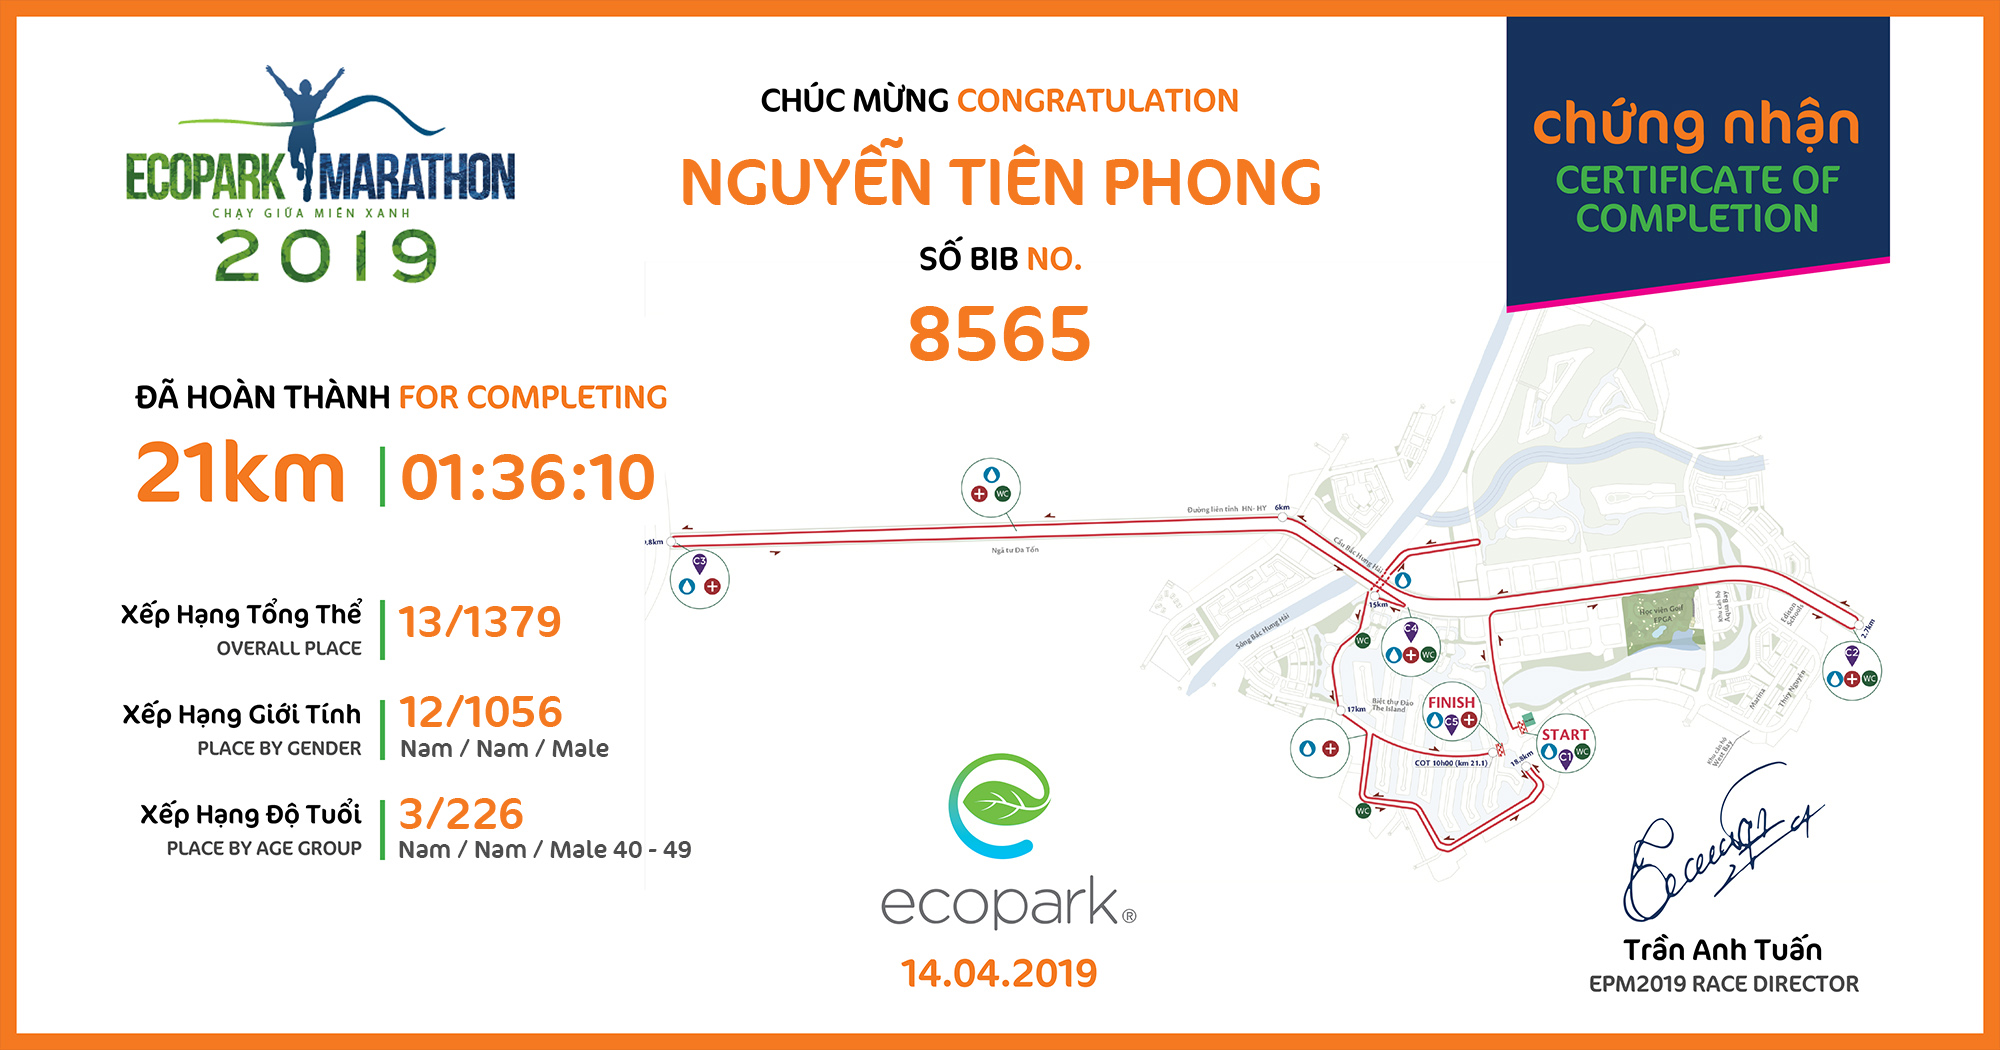 8565 - Nguyễn Tiên Phong